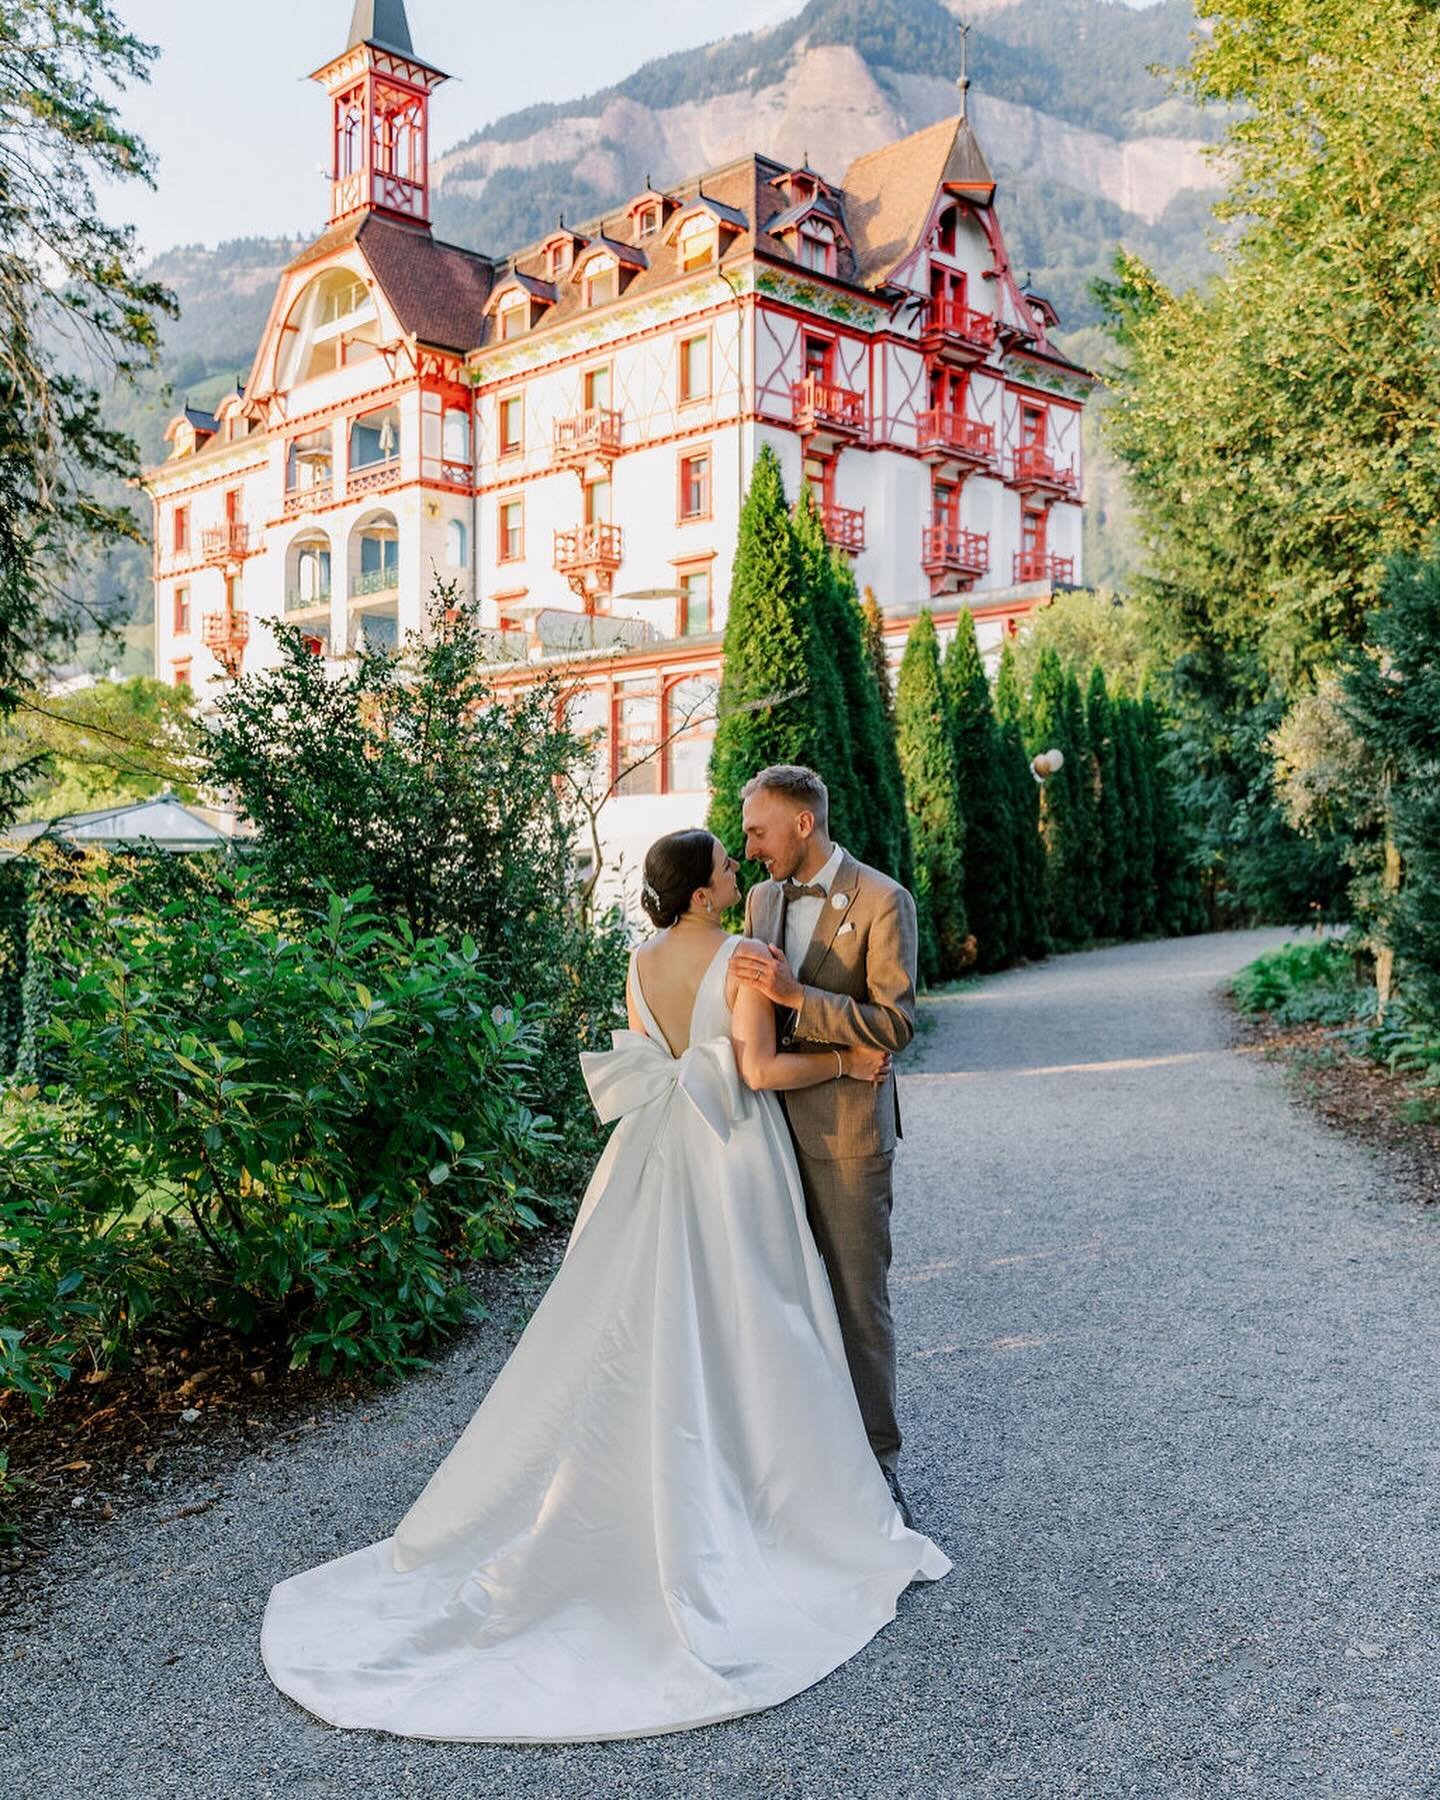 &laquo;
autumn wedding at lake lucerne

Location: @vitznauerhof, @hotel_floraalpina 
Fotografie: @davidandkathrin, @m_____stories, @mcreativedirections 
Videografie: @davidandkathrin 
florales Design &amp; Styling: @tabea
Zeremonie: @traumich.ch
Pape